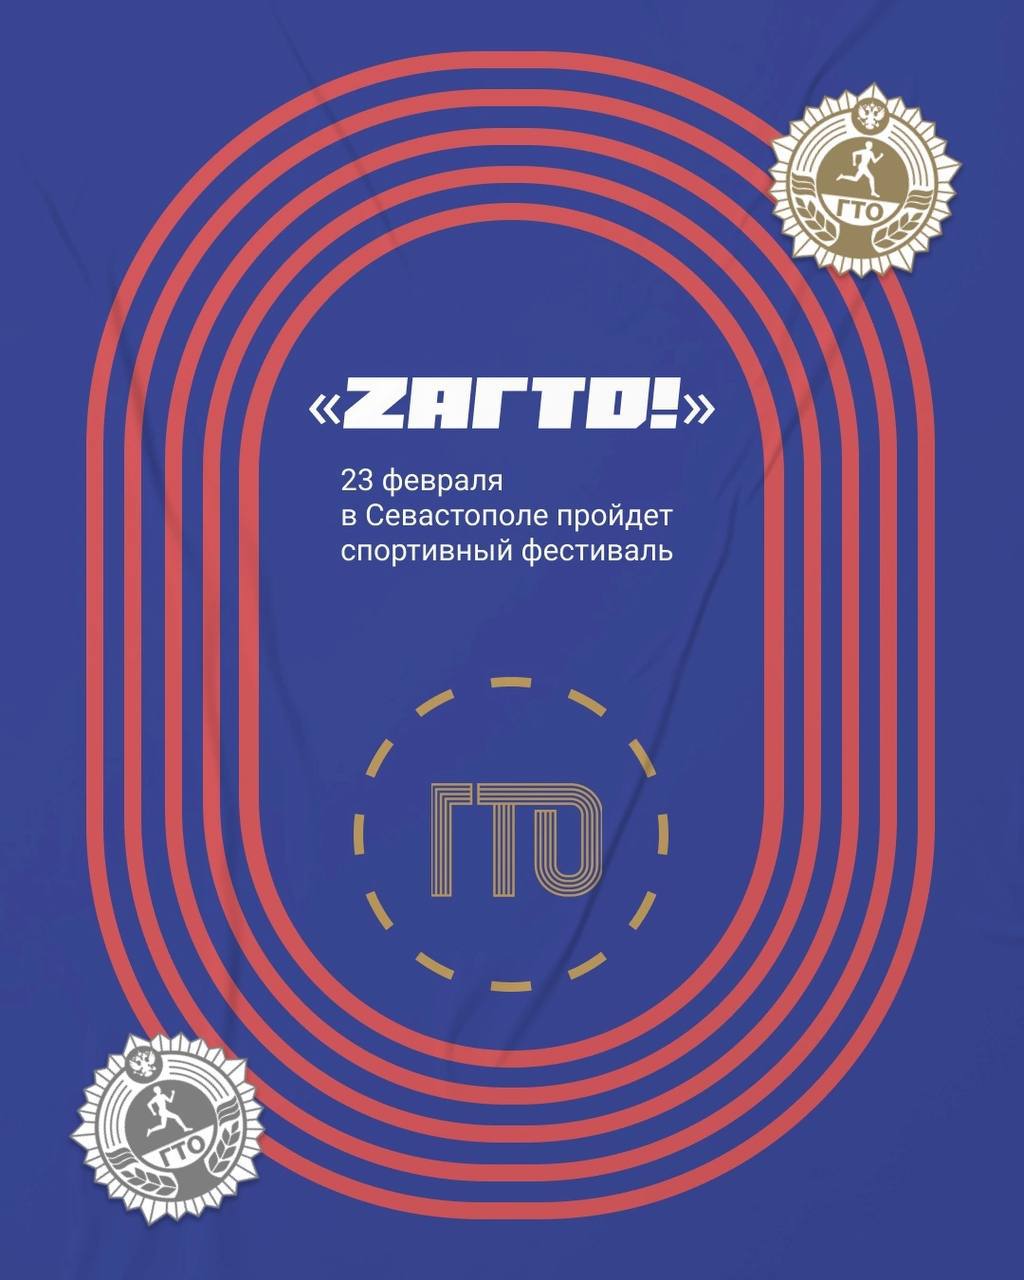 Спортивный фестиваль «ZаГТО!» состоится 23 февраля.